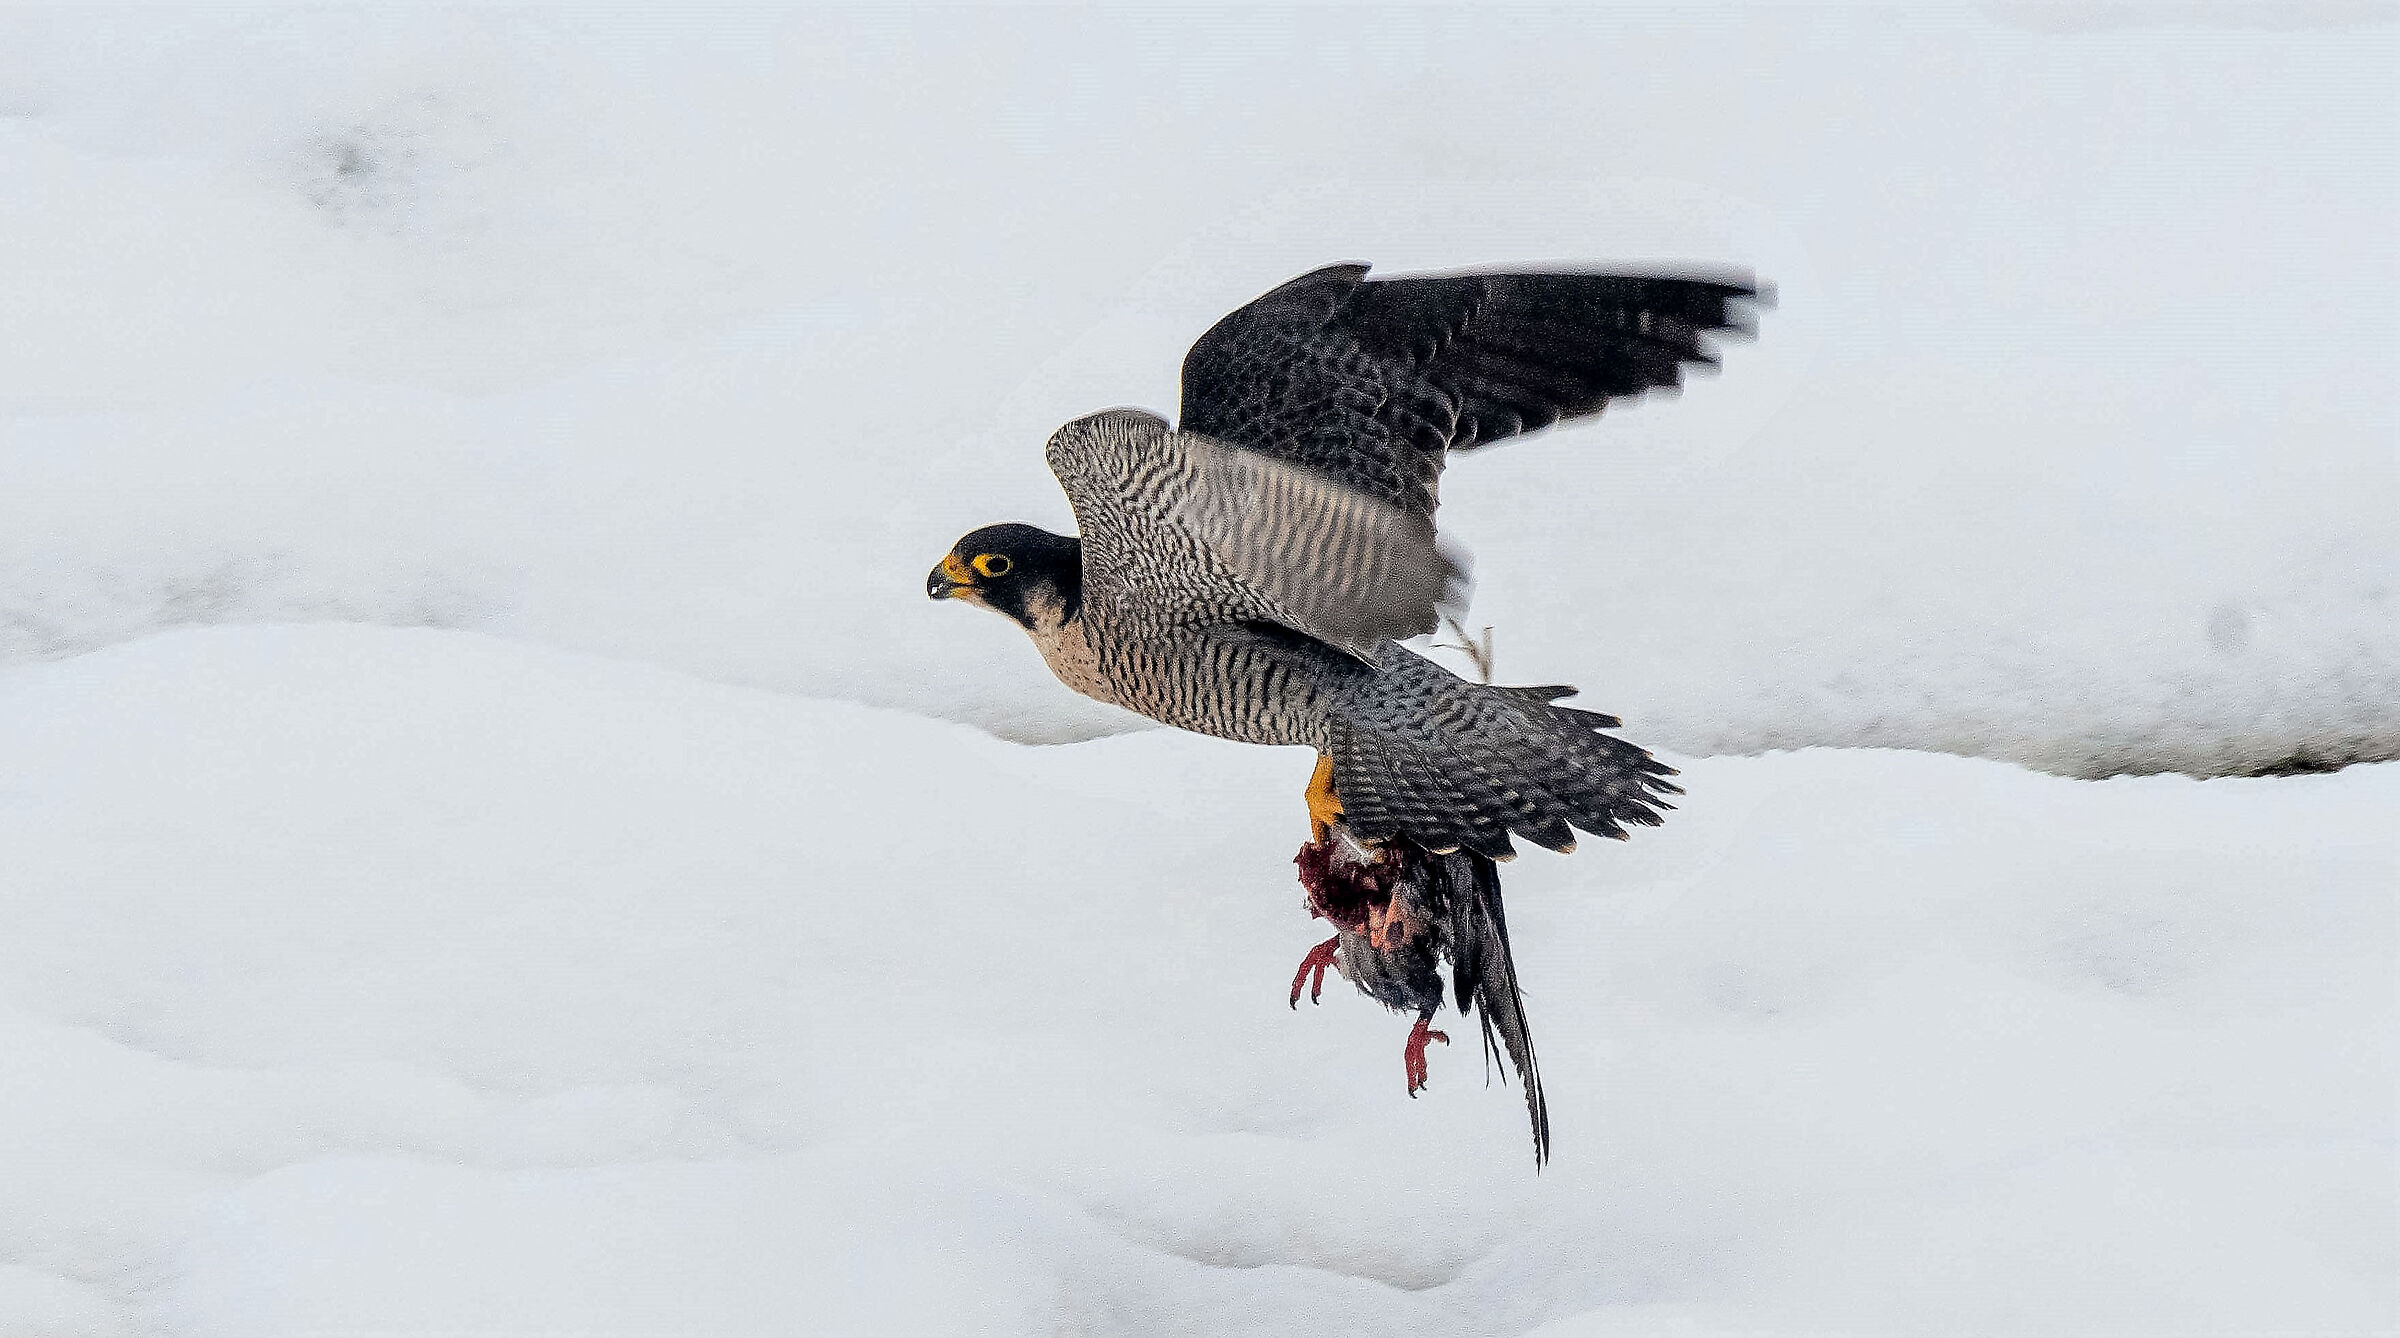 Peregrine falcon with prey...